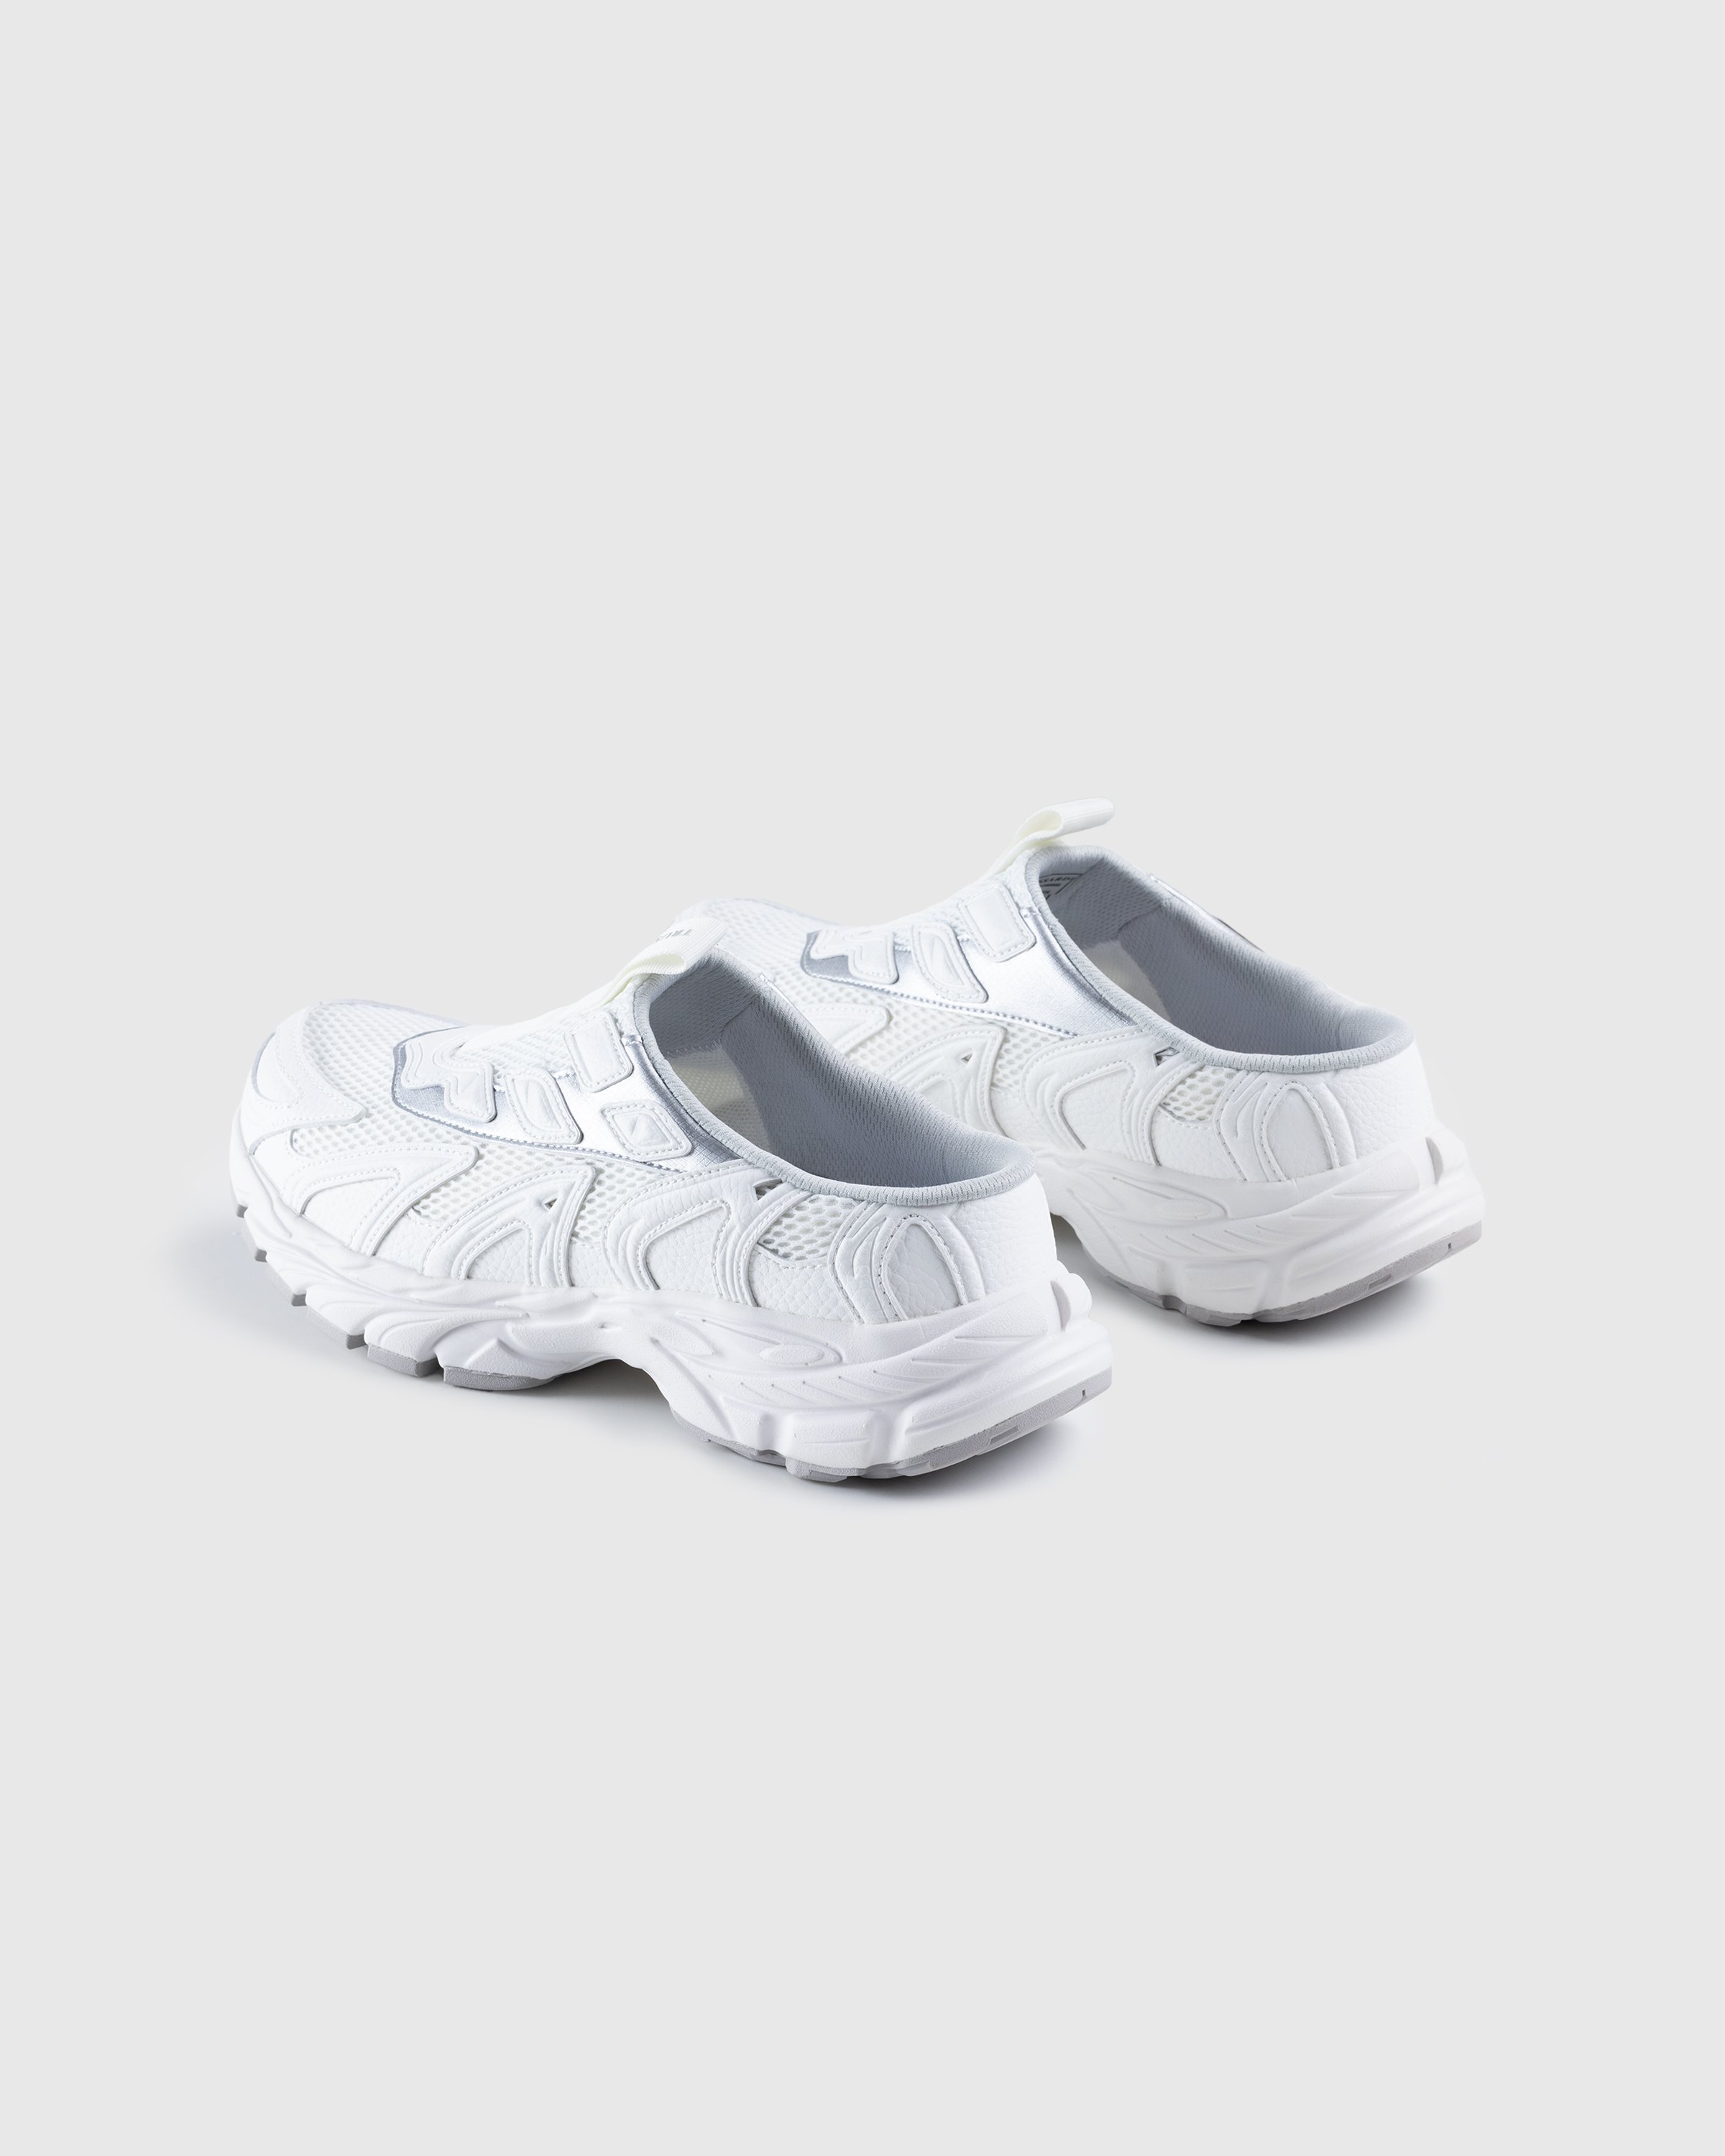 Trussardi - Retro Mule Sneaker - Footwear - White - Image 3